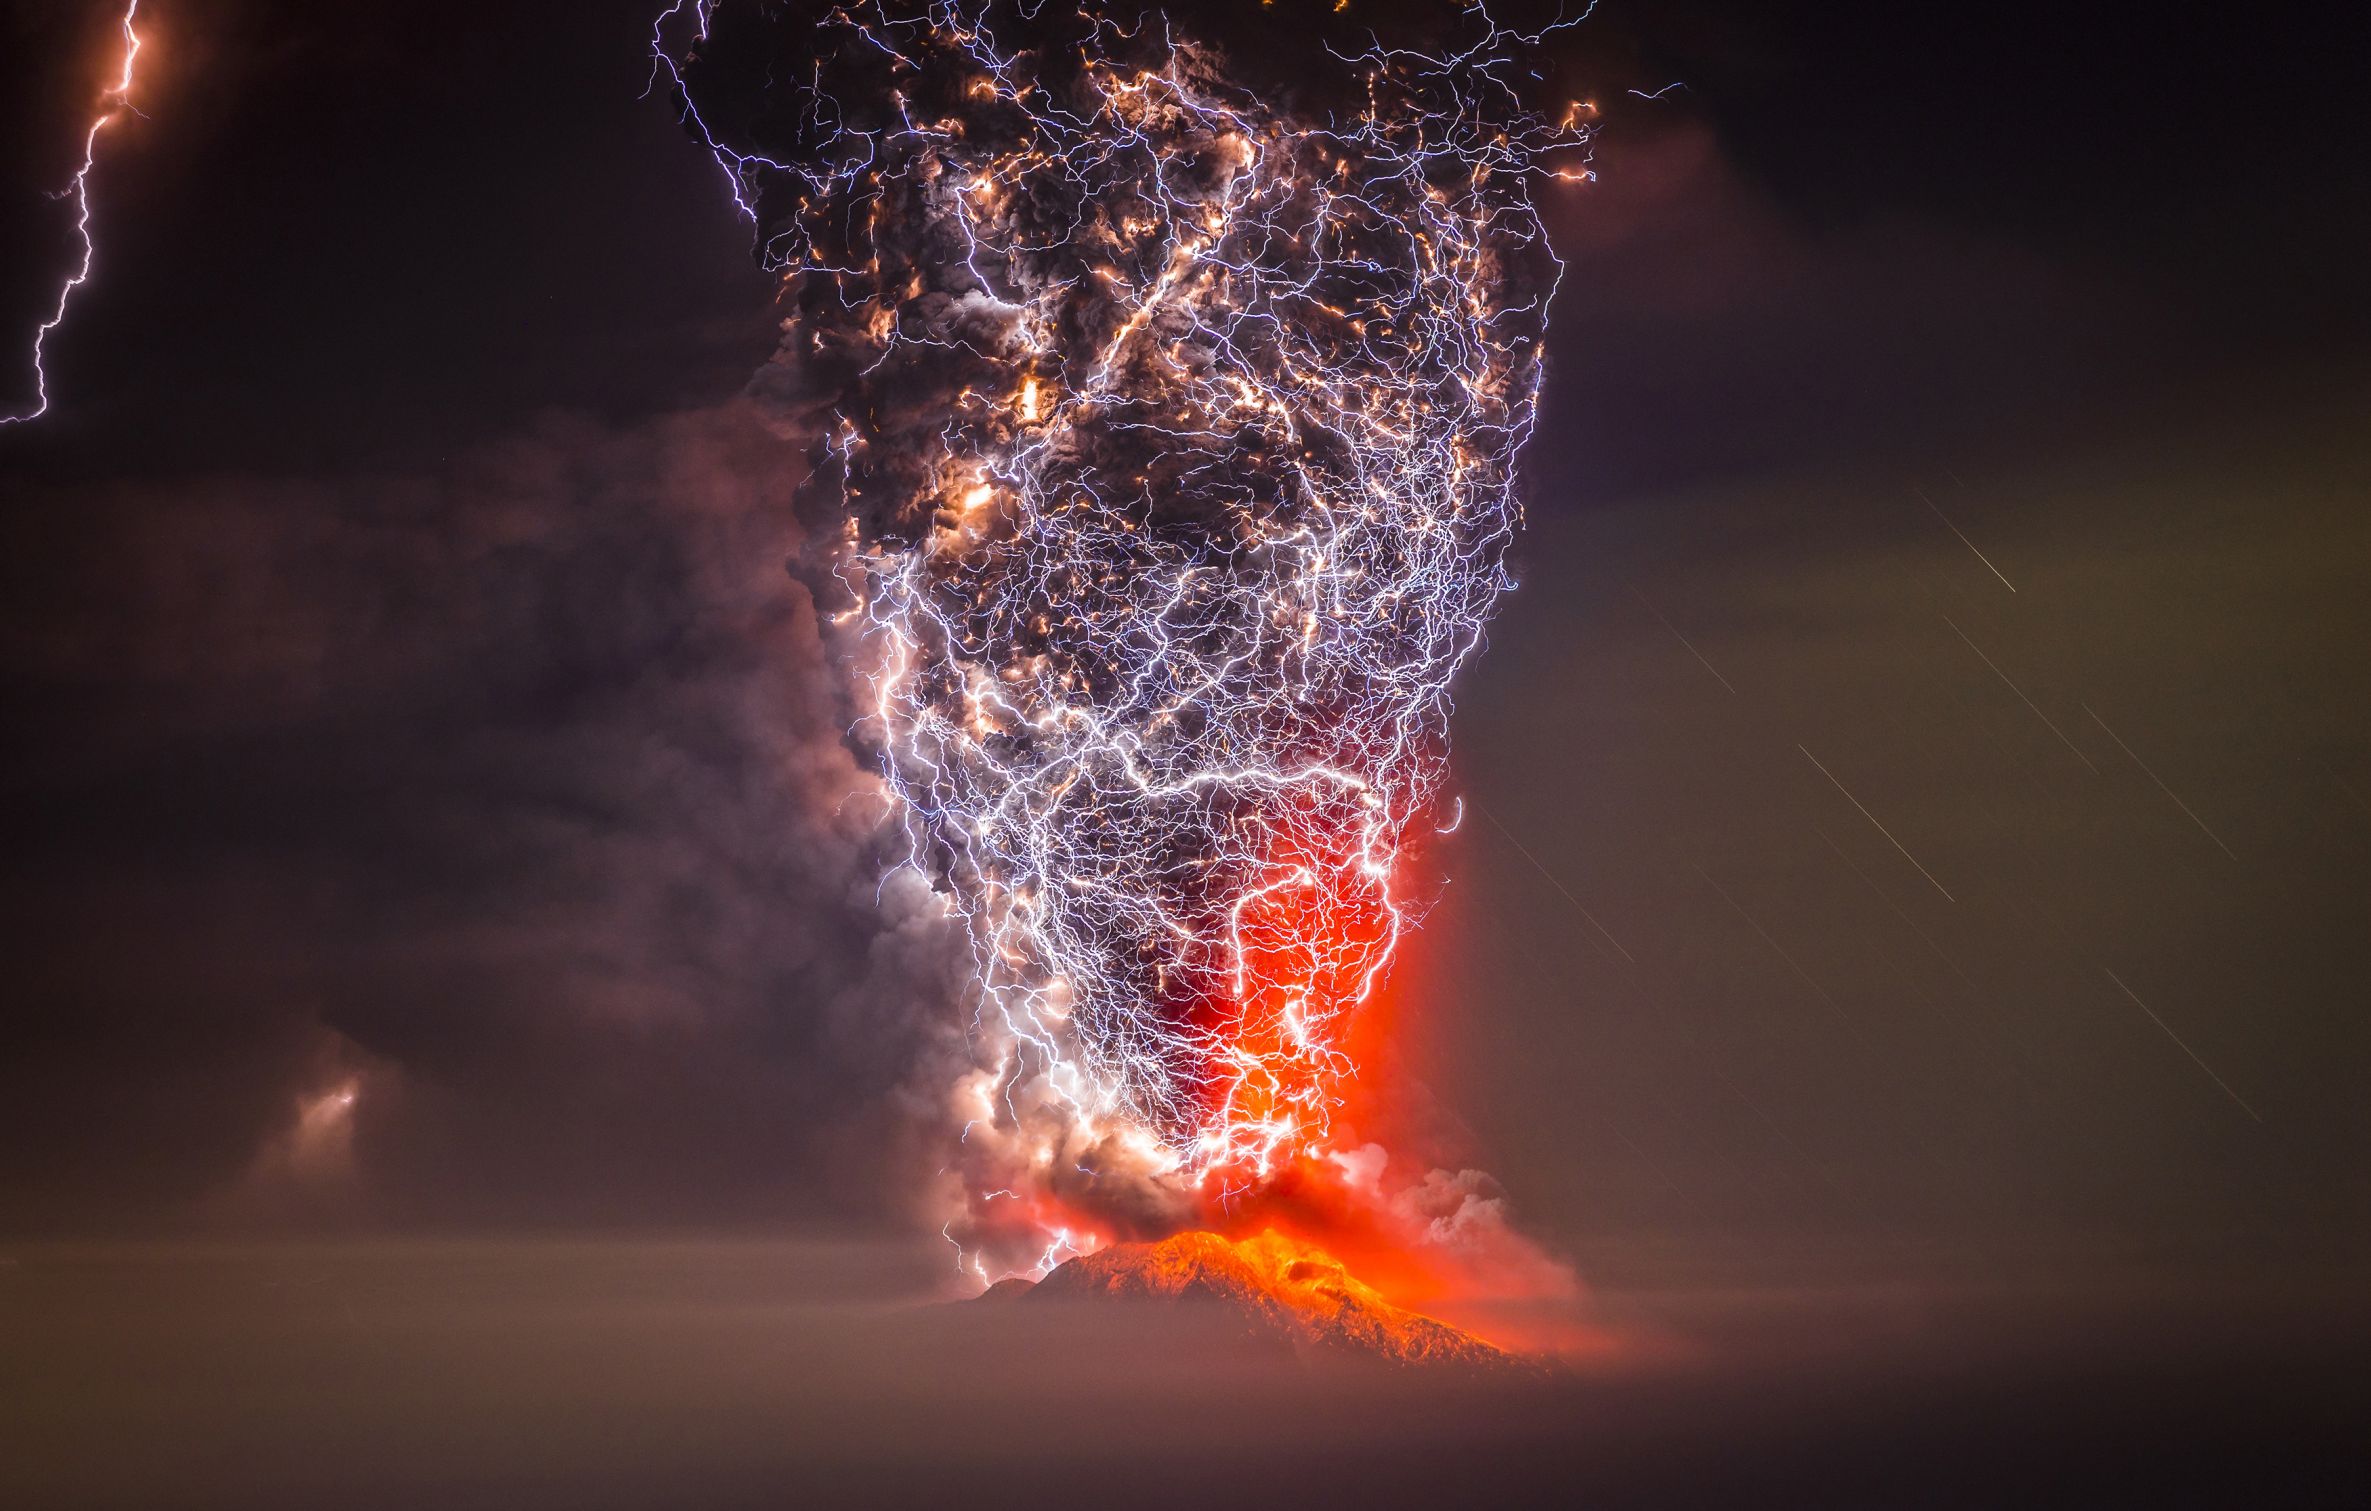 Lightning Hitting Erupting Volcano Blank Meme Template